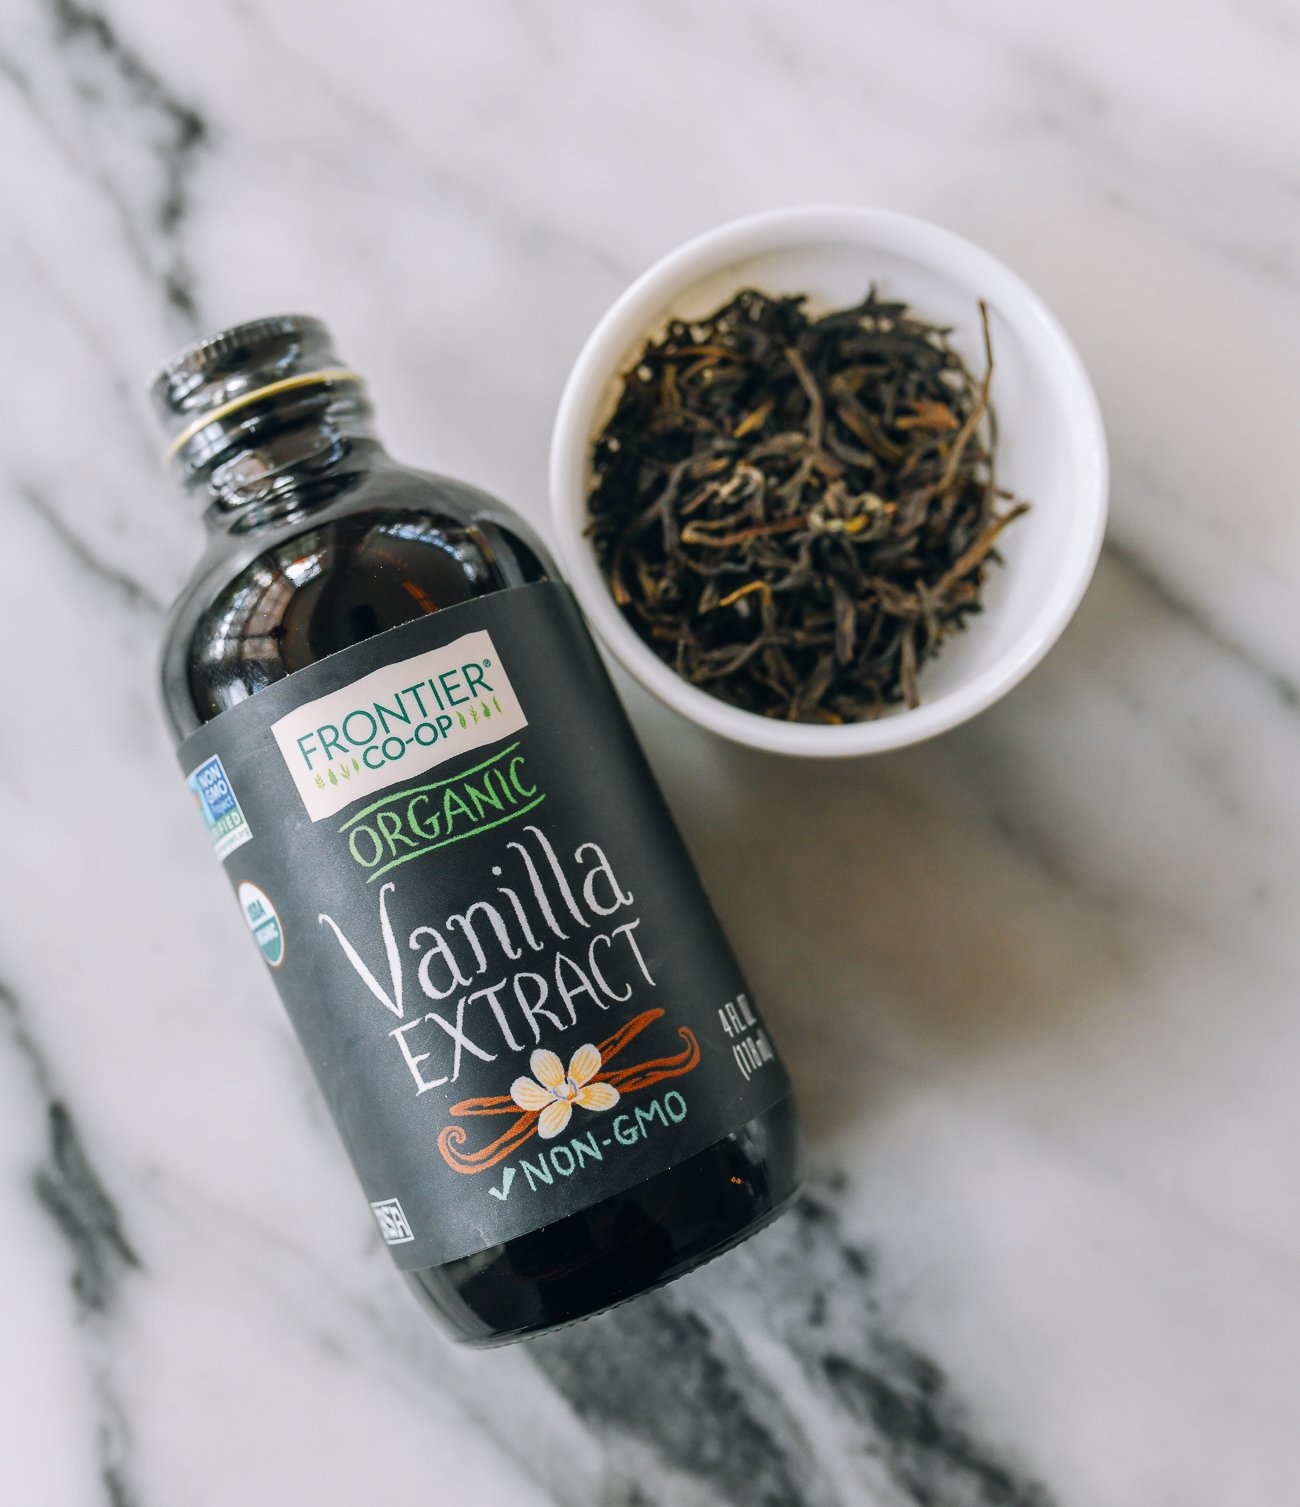 vanilla extract and jasmine tea